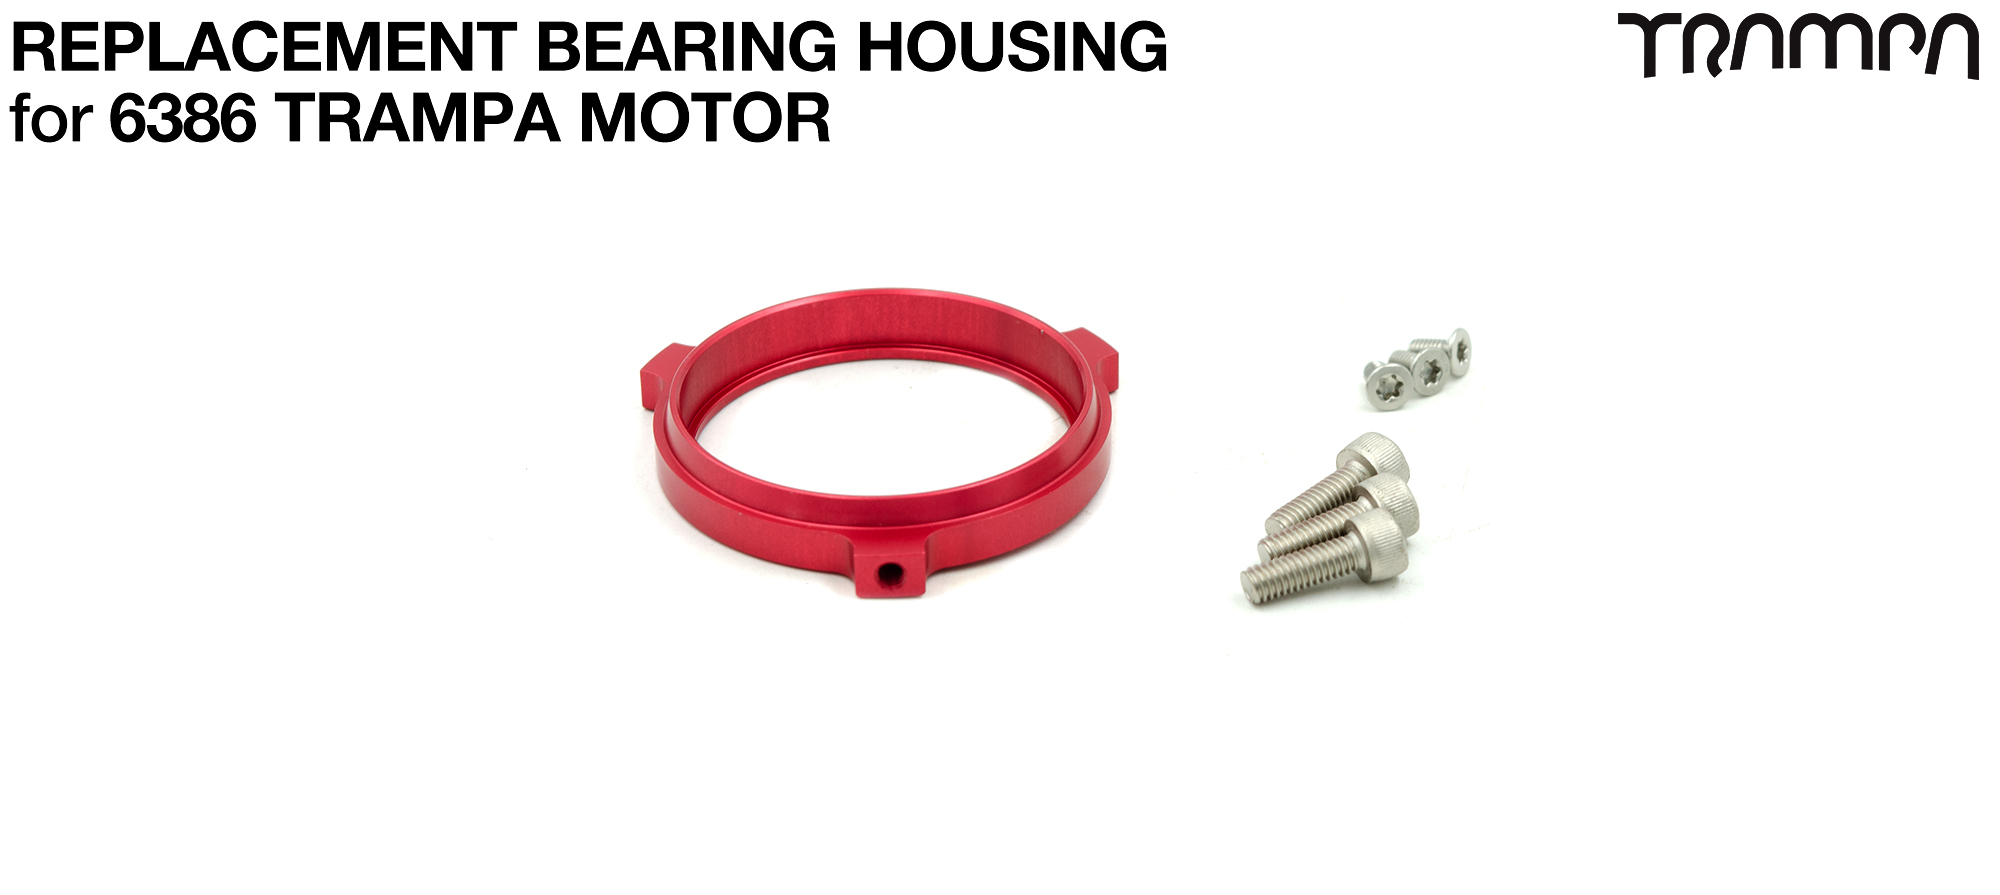 Replacement Bearing Housing for 6386 TRAMPA Motor 